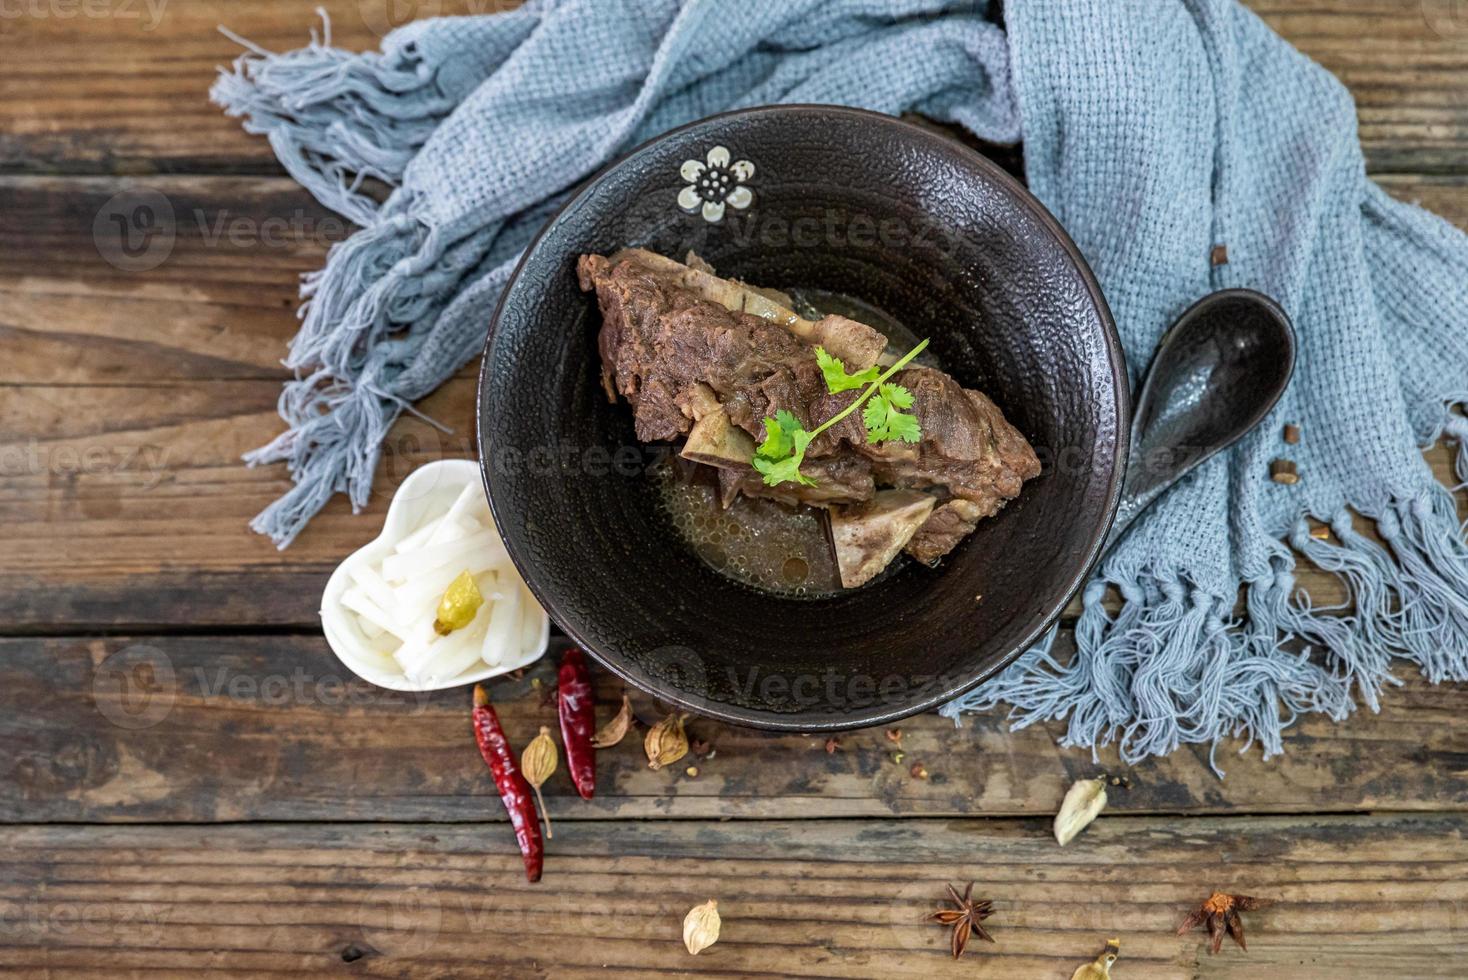 a comida feita de carne bovina está na tigela sobre a toalha da mesa de madeira foto